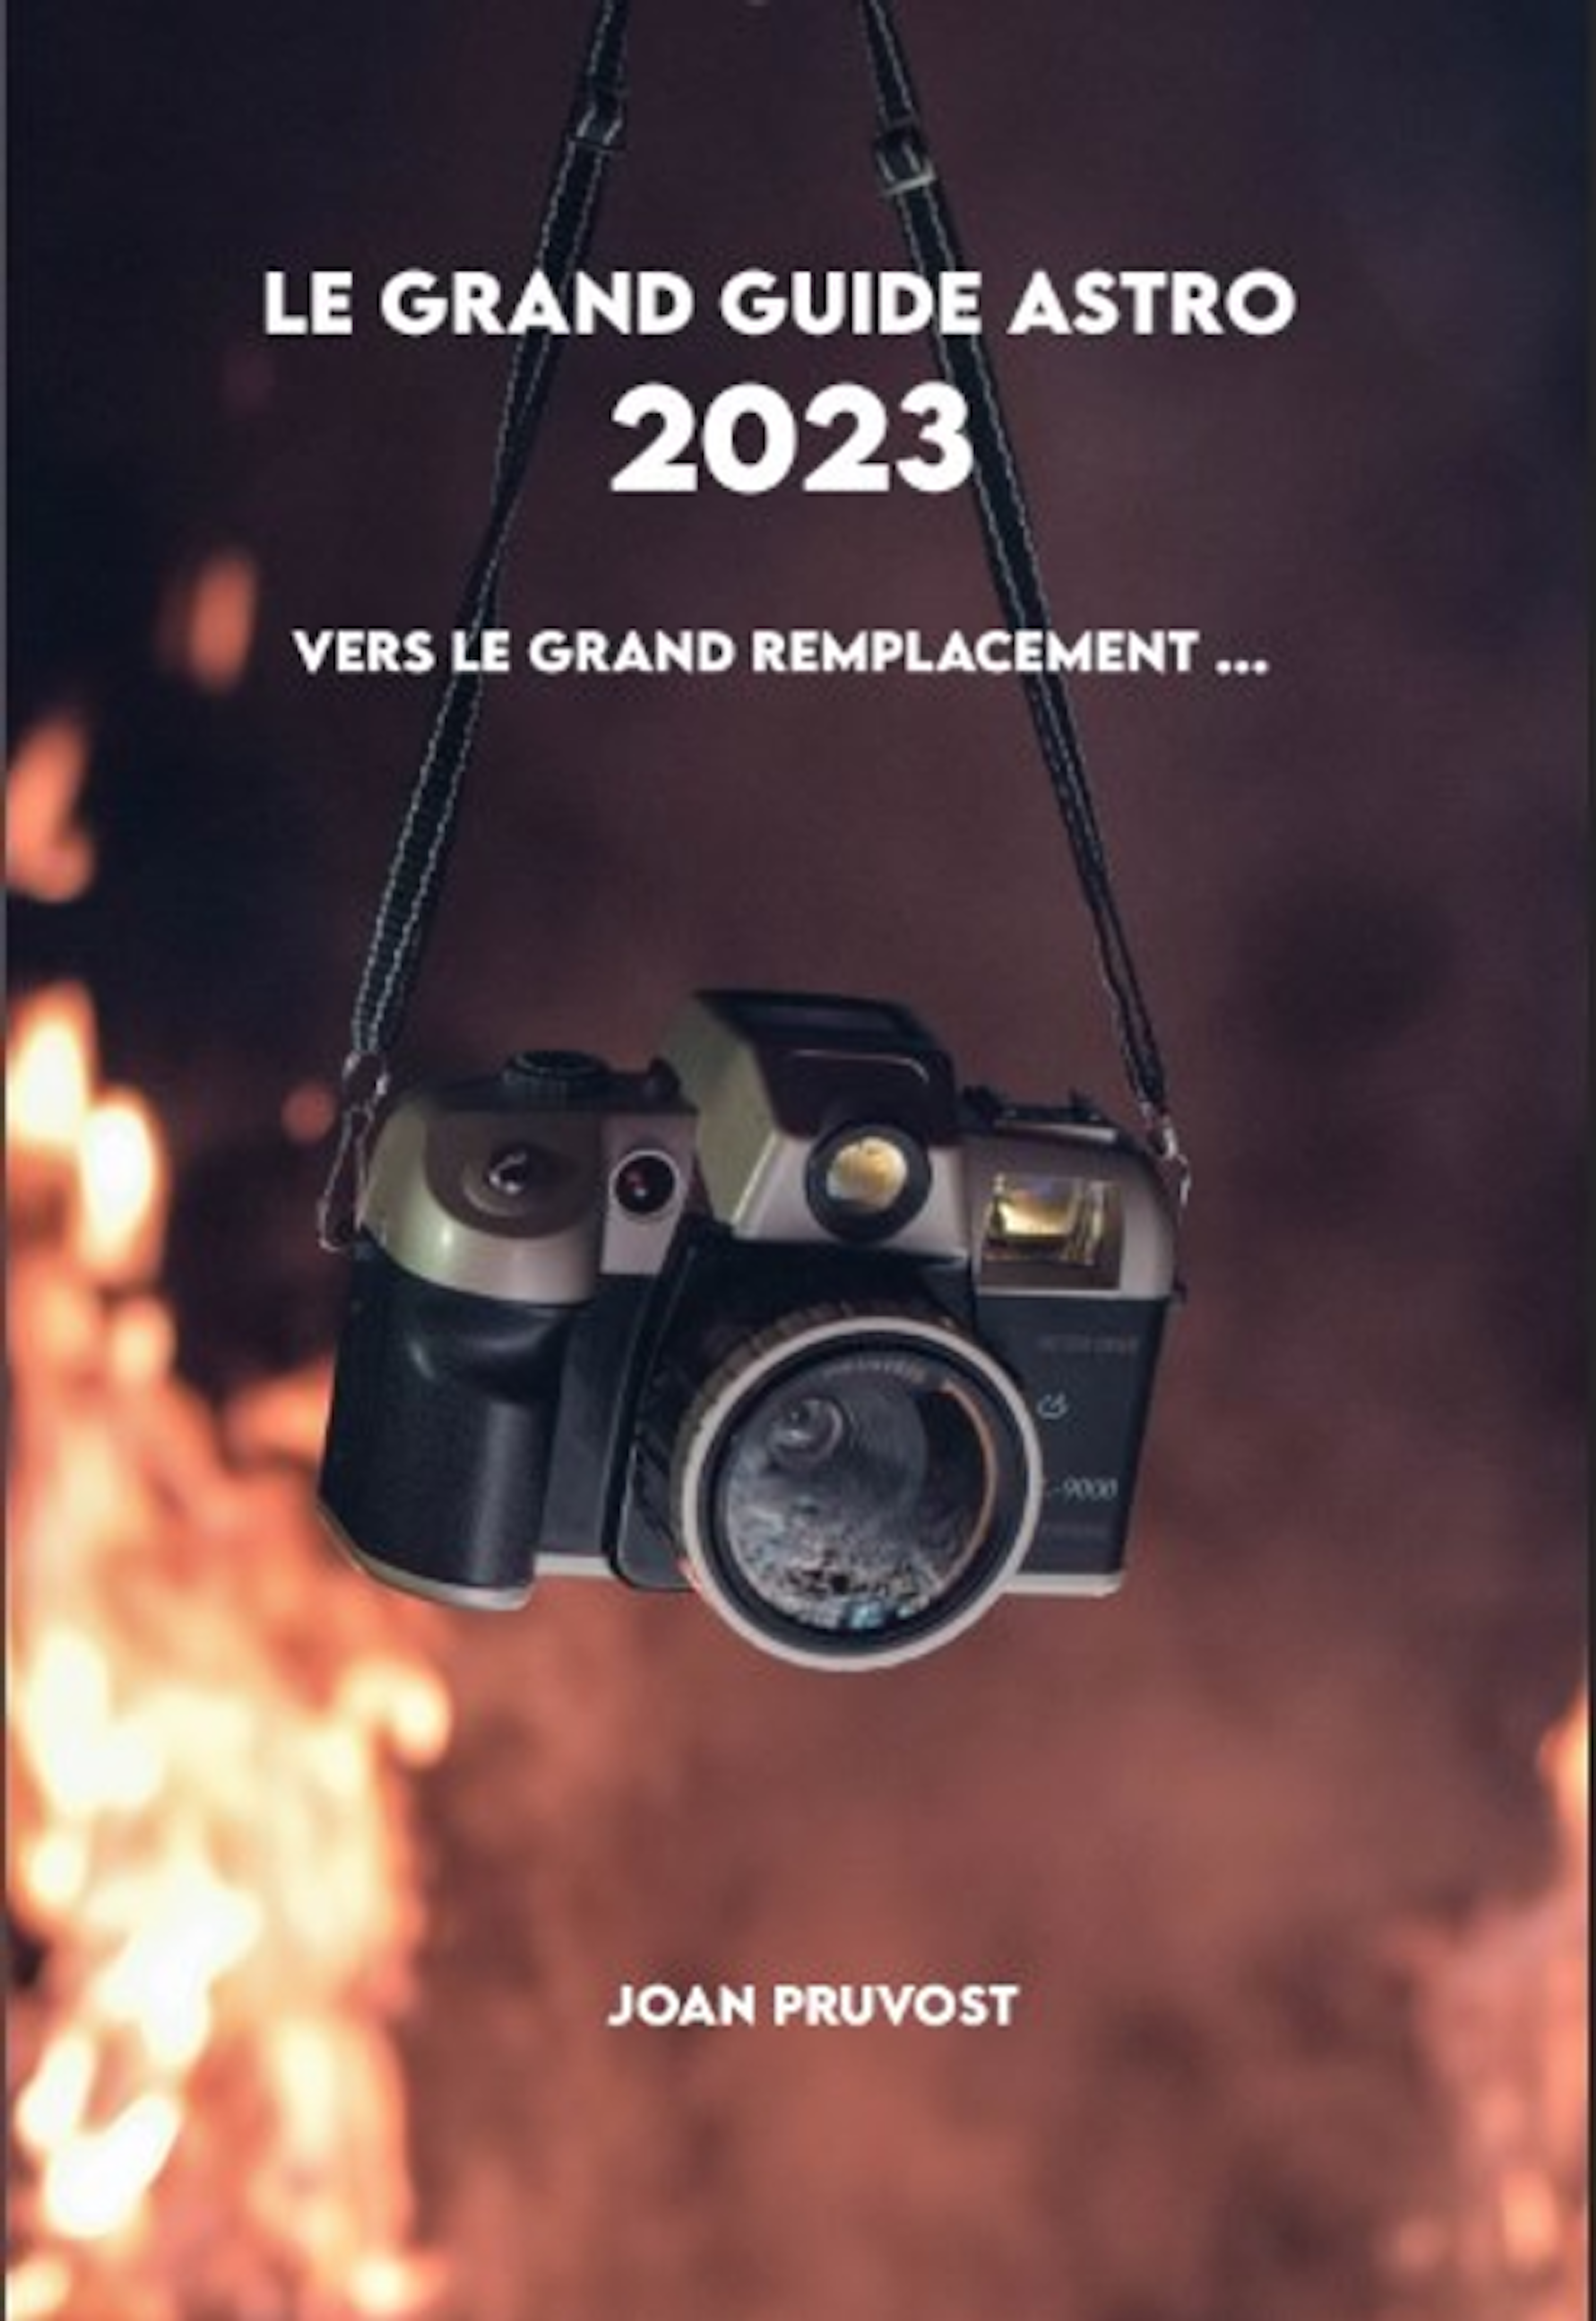 Le Grand Guide Astro 2023 